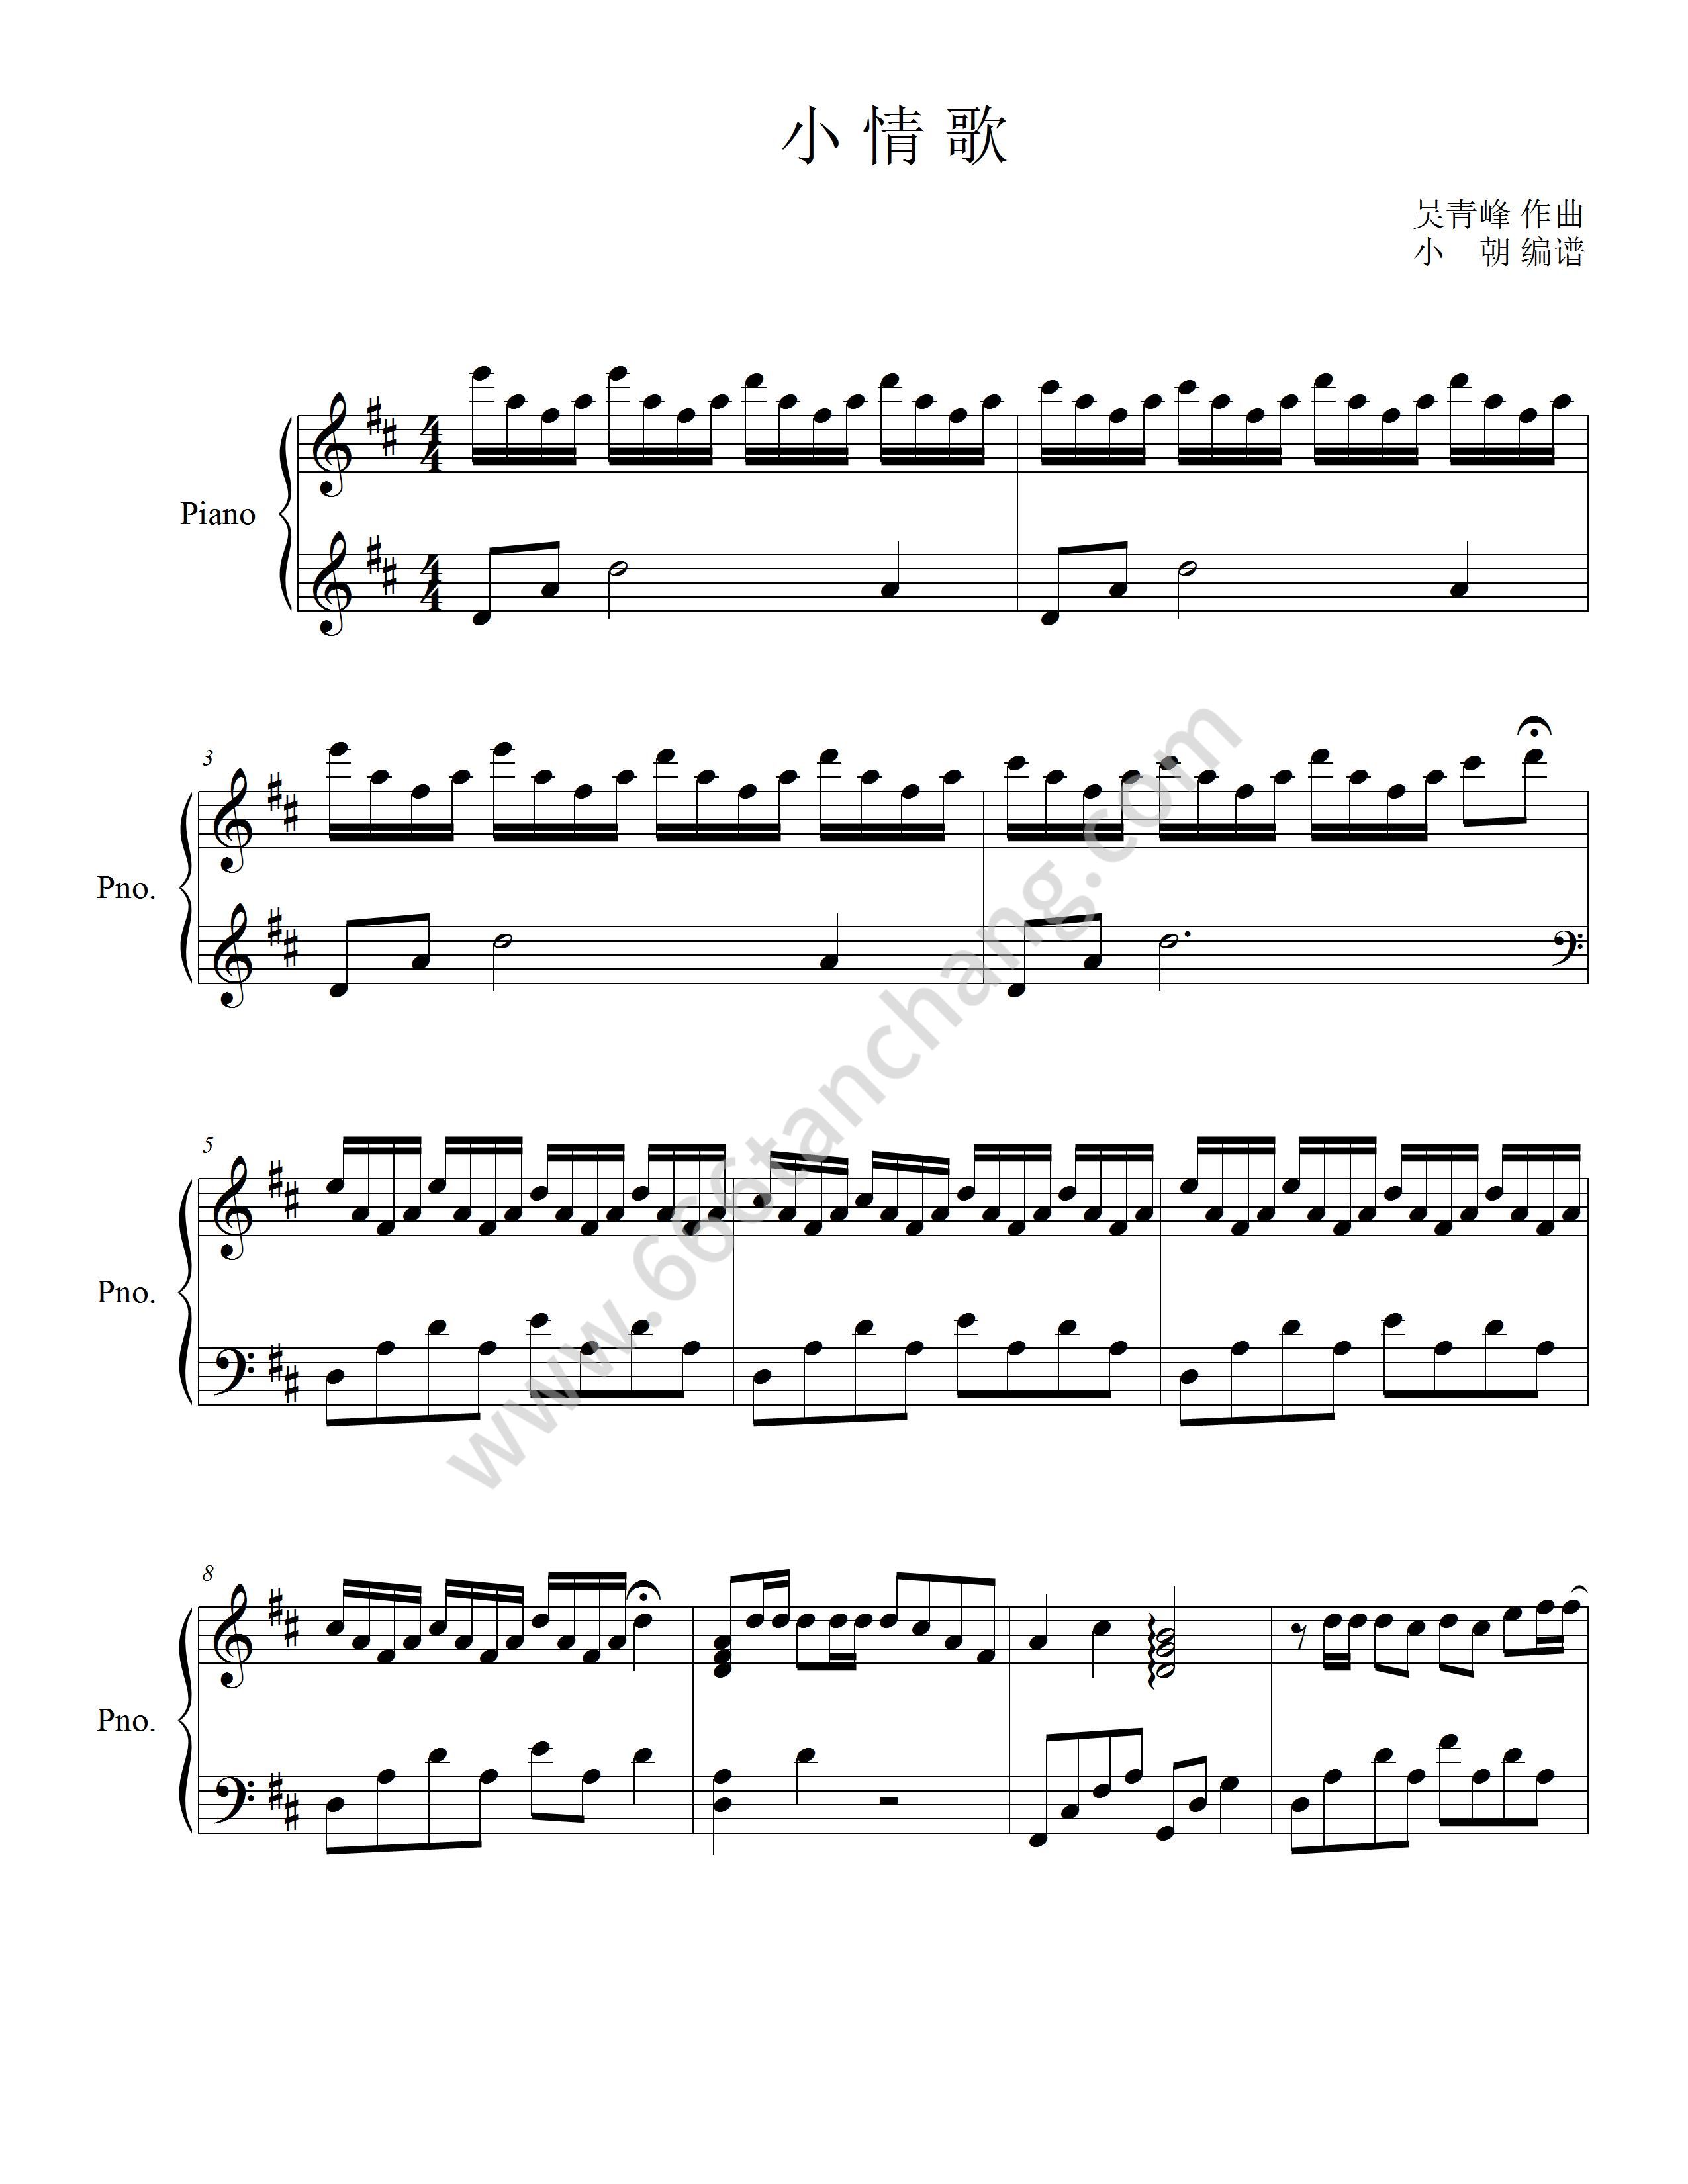 钢琴谱小情歌钢琴谱完美版独奏版流行弹唱网